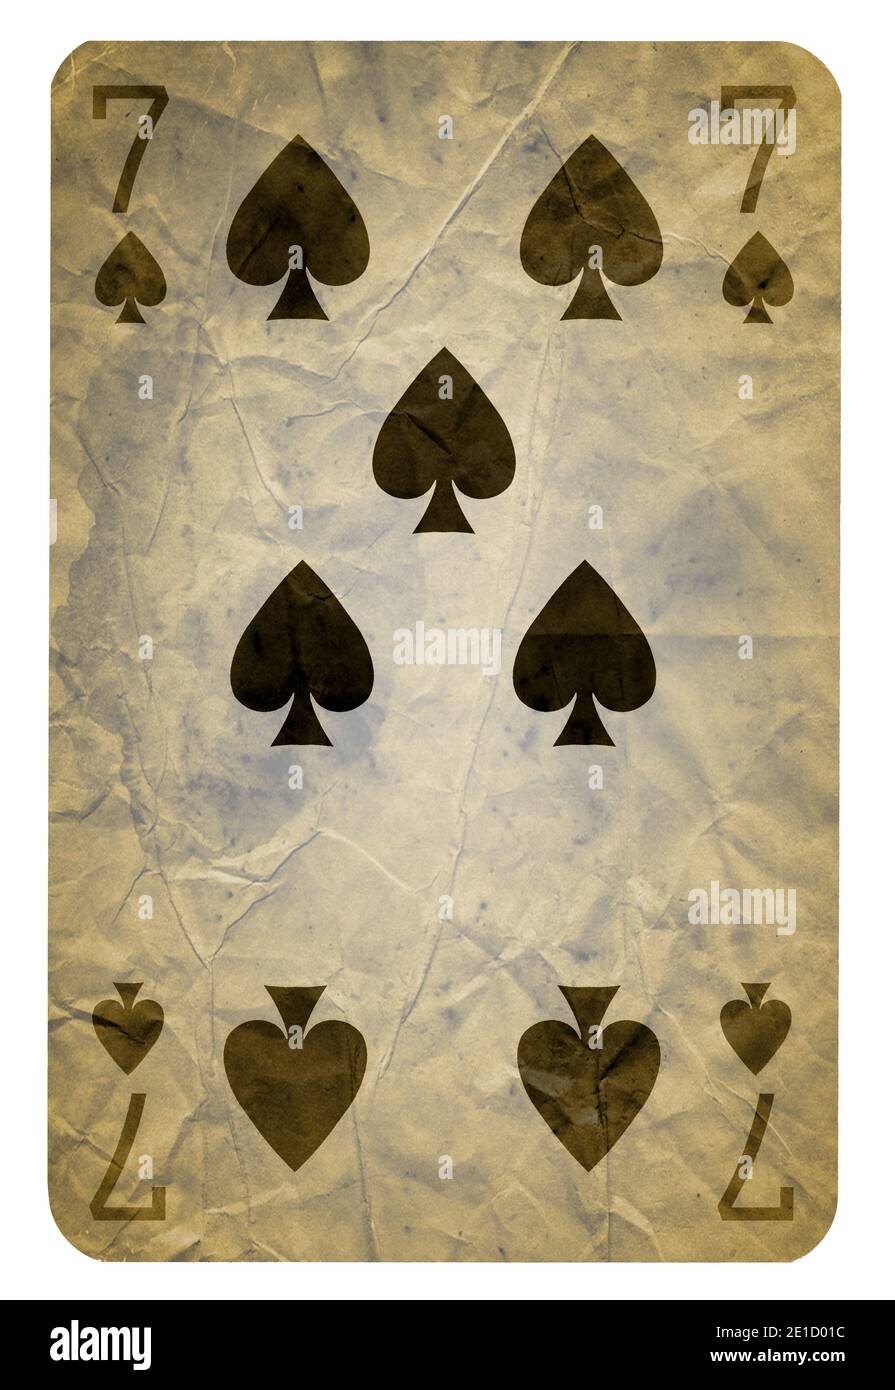 Cartes à jouer vintage de Spades suit, isolé sur fond blanc - haute qualité. XXL Banque D'Images